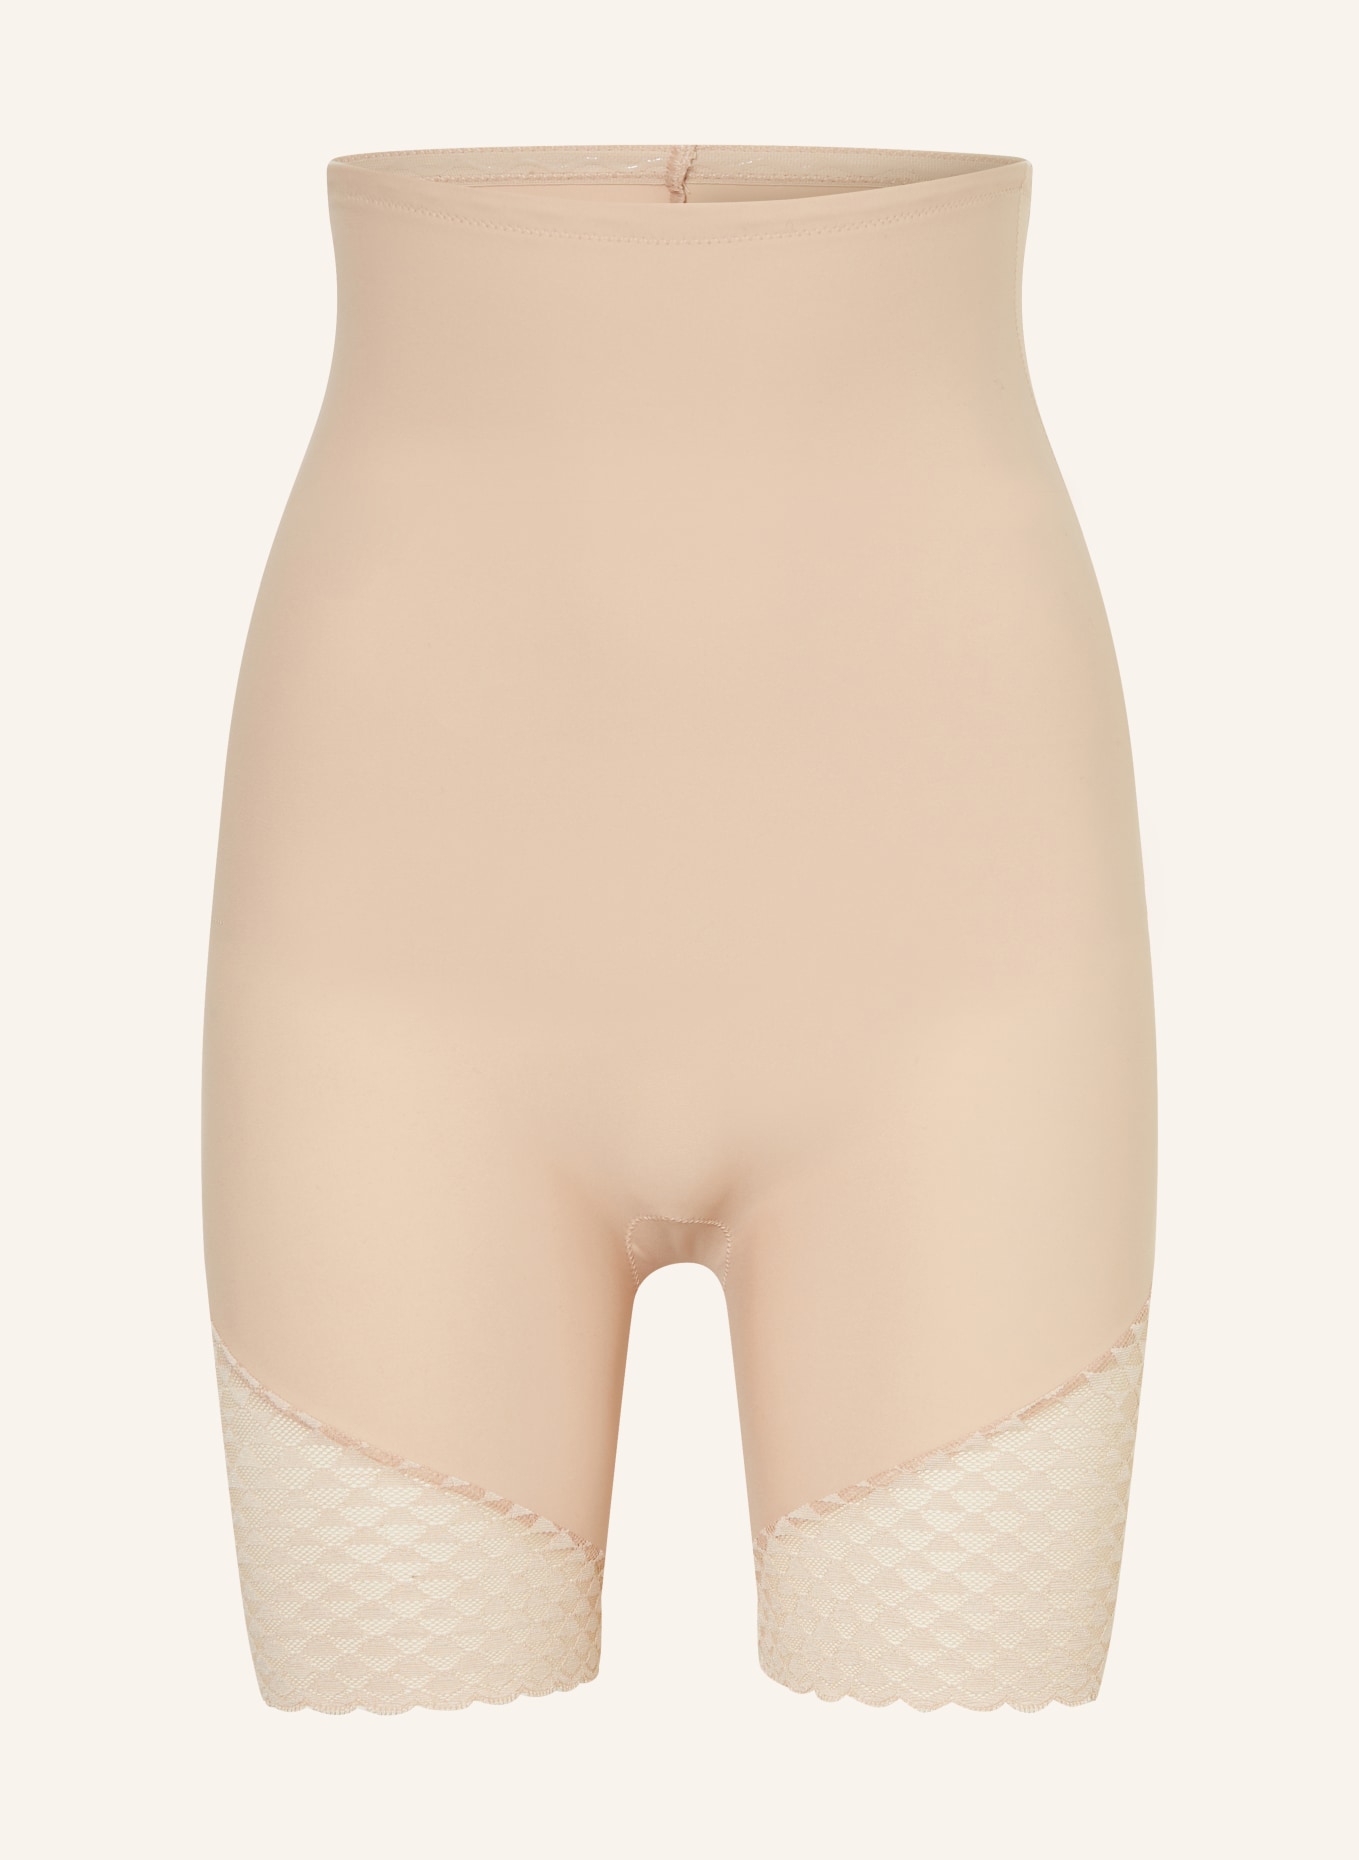 SIMONE PÉRÈLE Shaping shorts SUBTILE, Color: NUDE (Image 1)